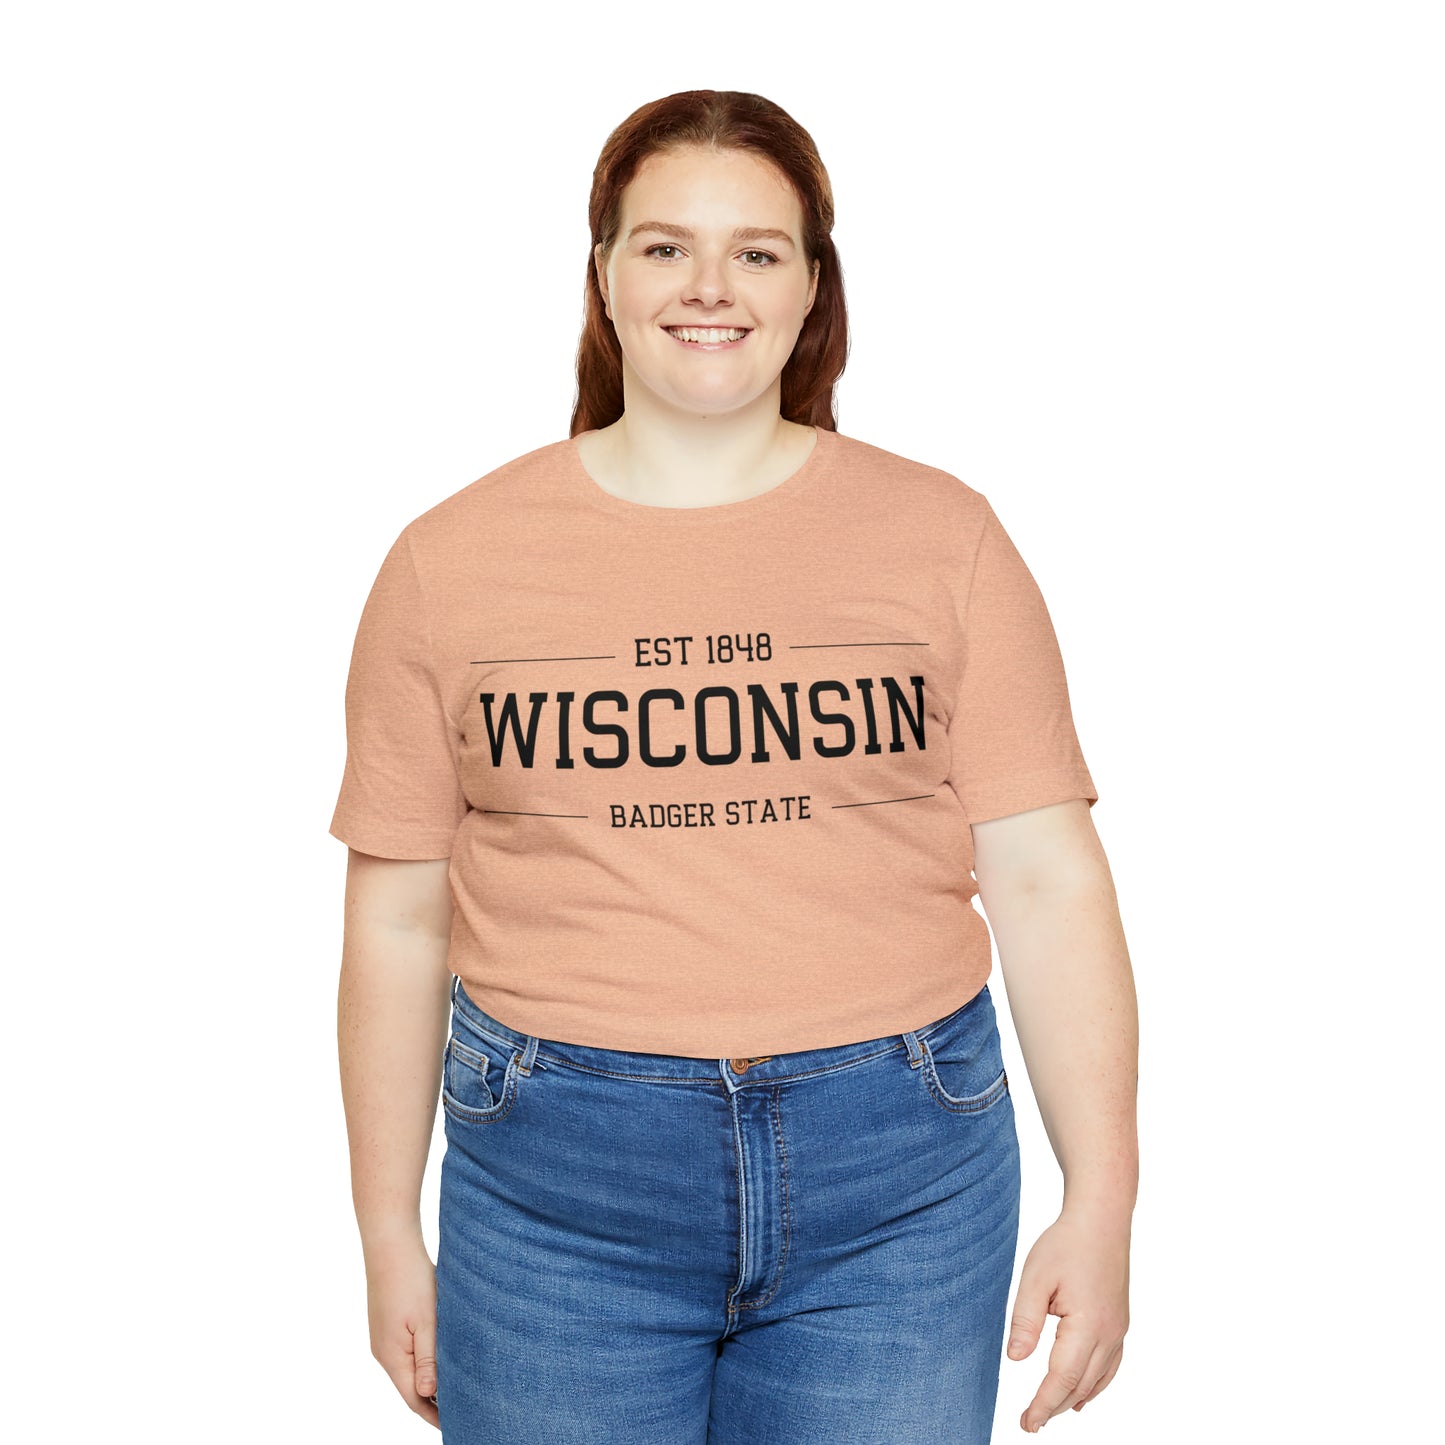 Wisconsin EST 1848